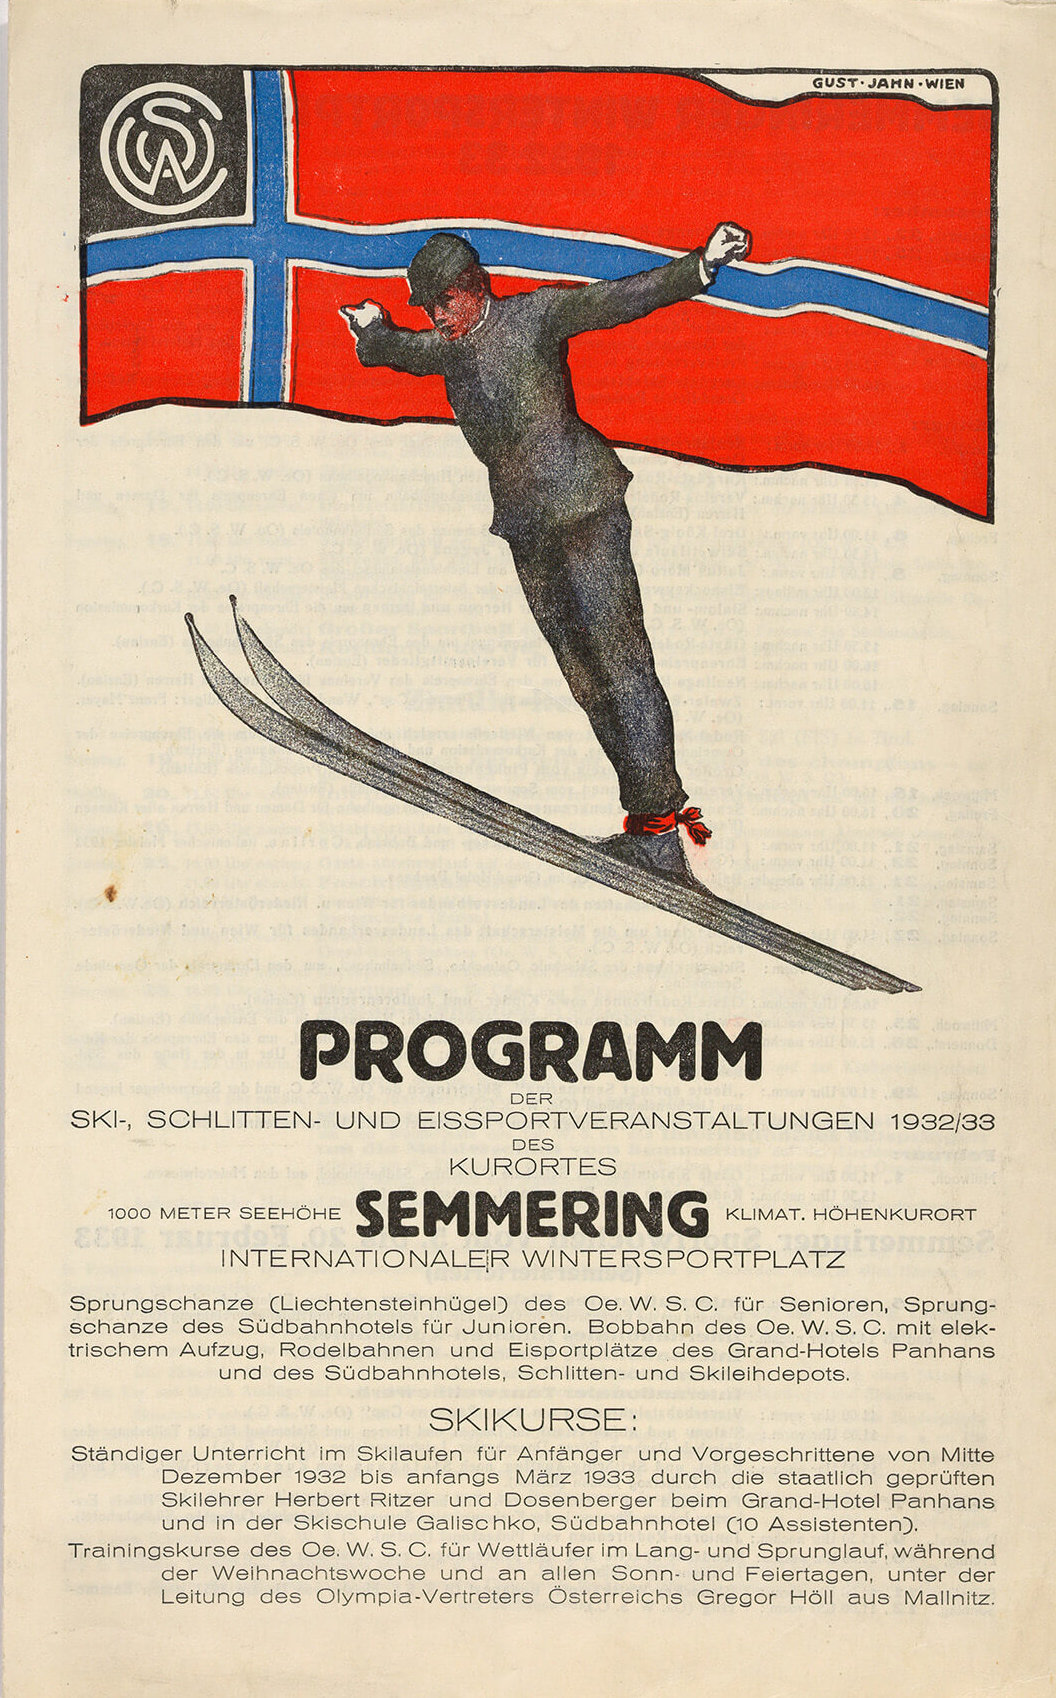 Programm der Ski-, Schlitten- und Eissportveranstaltungen des Kurortes Semmering., 1932/33, Wien Museum 